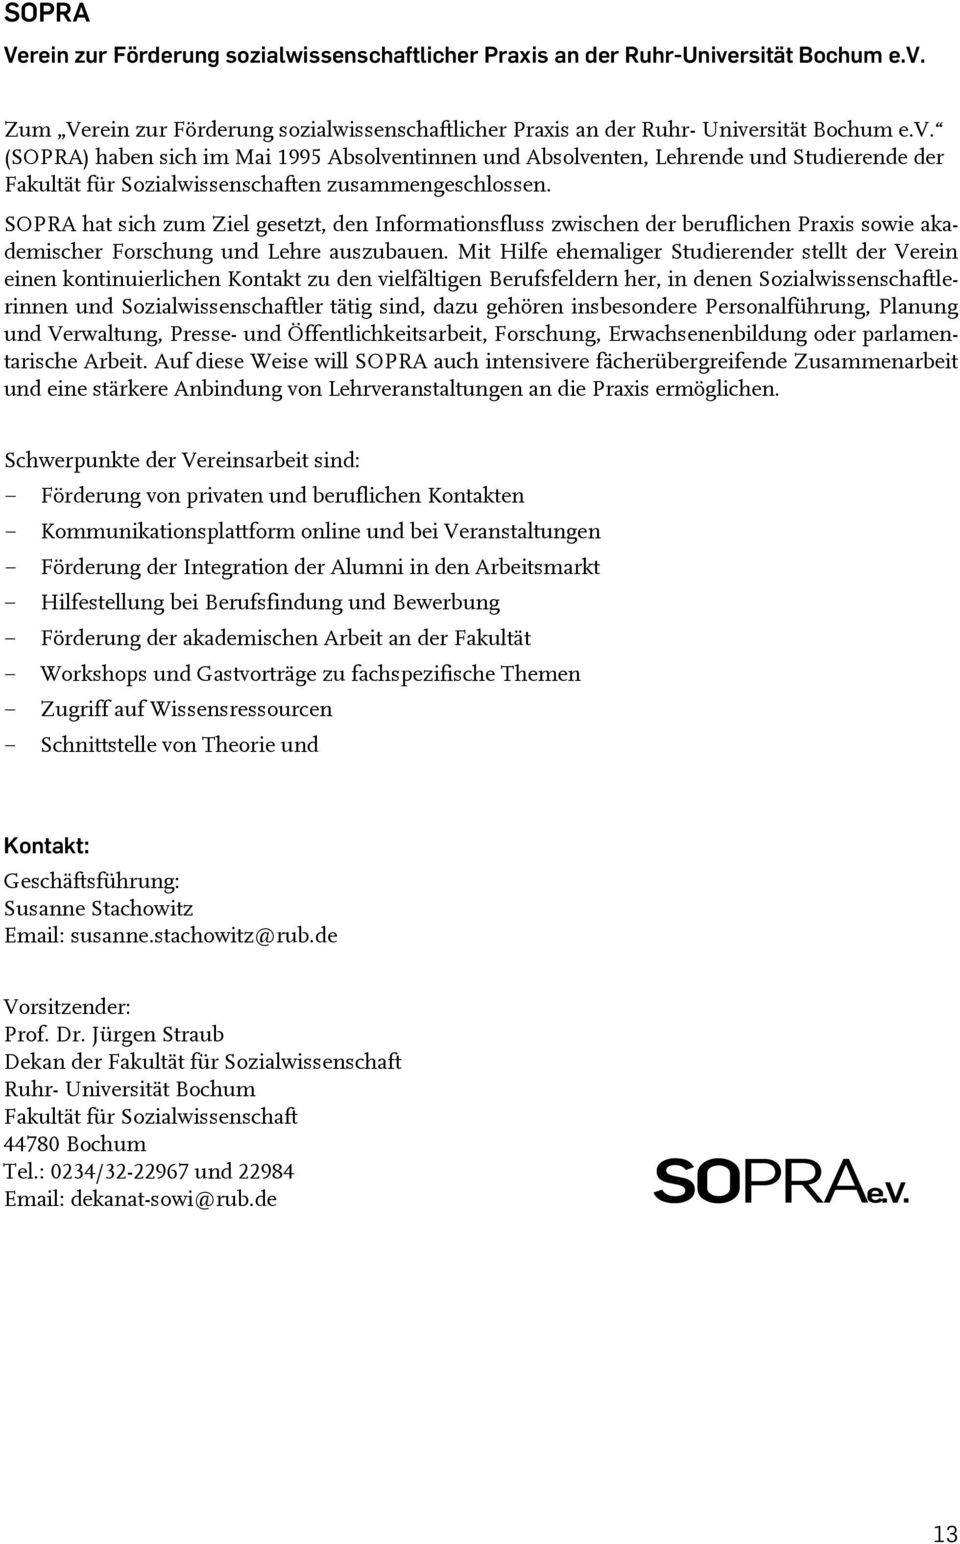 SOPRA hat sich zum Ziel gesetzt, den Informationsfluss zwischen der beruflichen Praxis sowie akademischer Forschung und Lehre auszubauen.